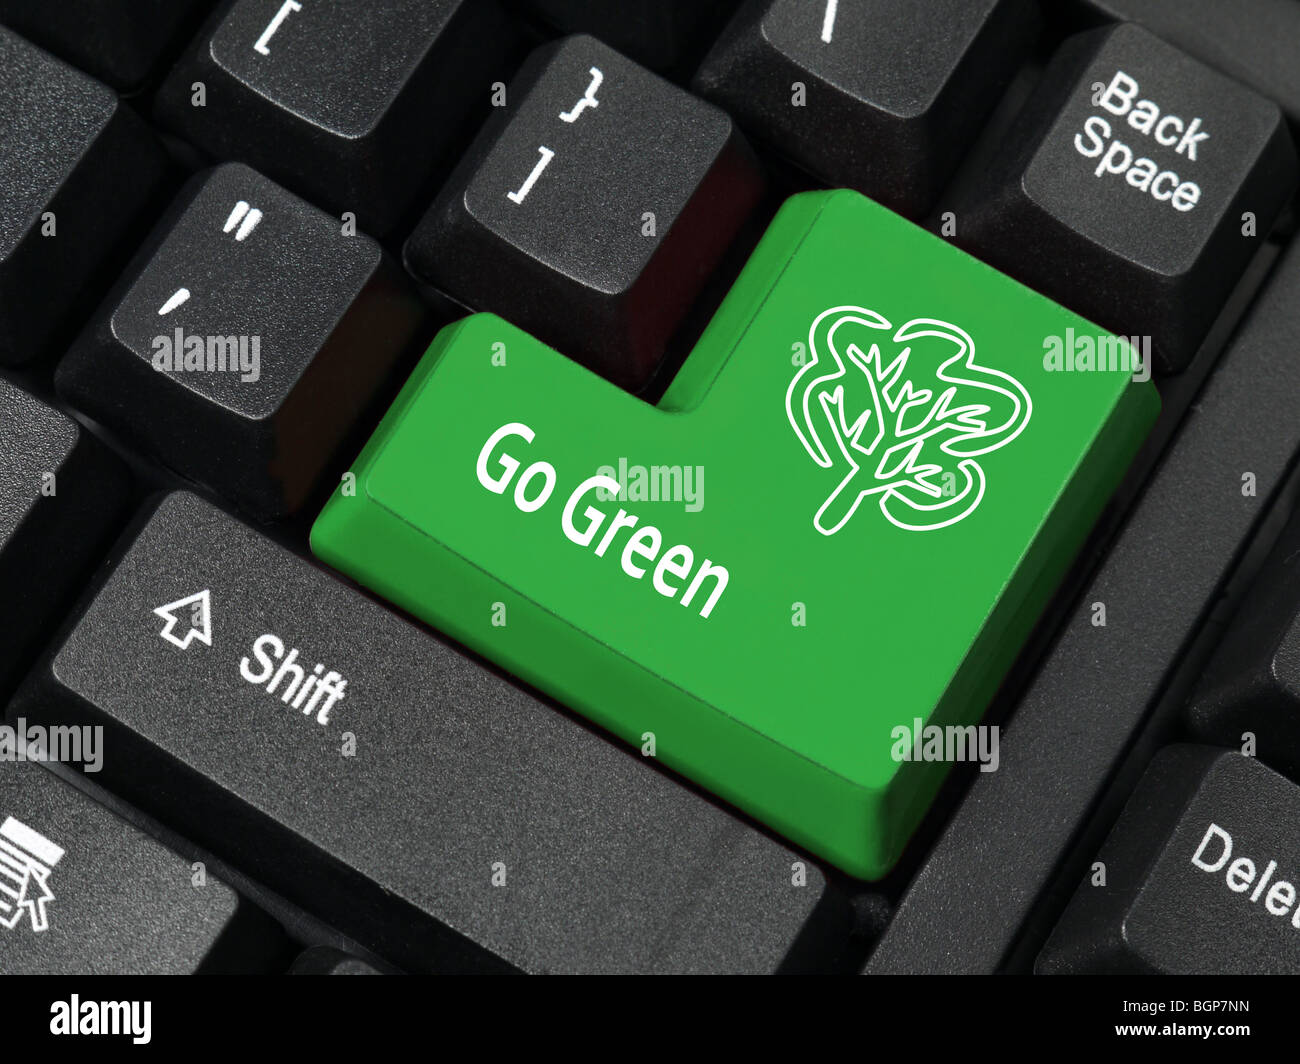 Nahaufnahme der Computer-Tastatur in grüner Farbe mit Go Green-Phrase und Baum-symbol Stockfoto